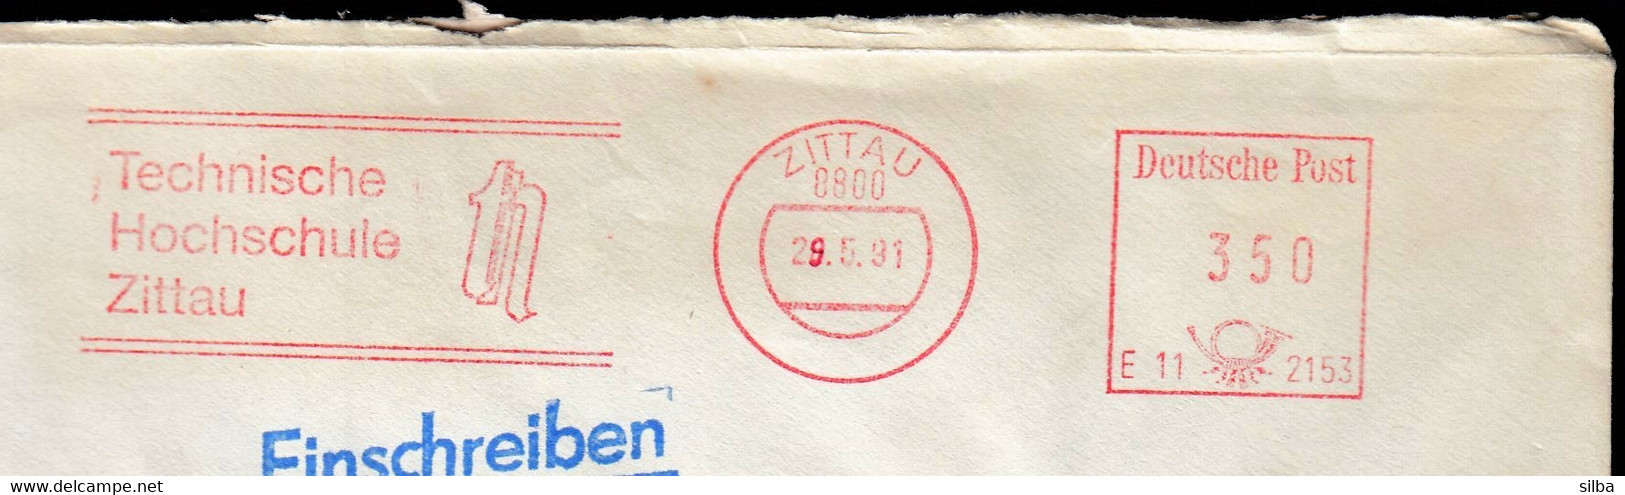 Germany Zittau 1991 / Technische Hochschule, Technical College, School / Machine Stamp, EMA - Franking Machines (EMA)